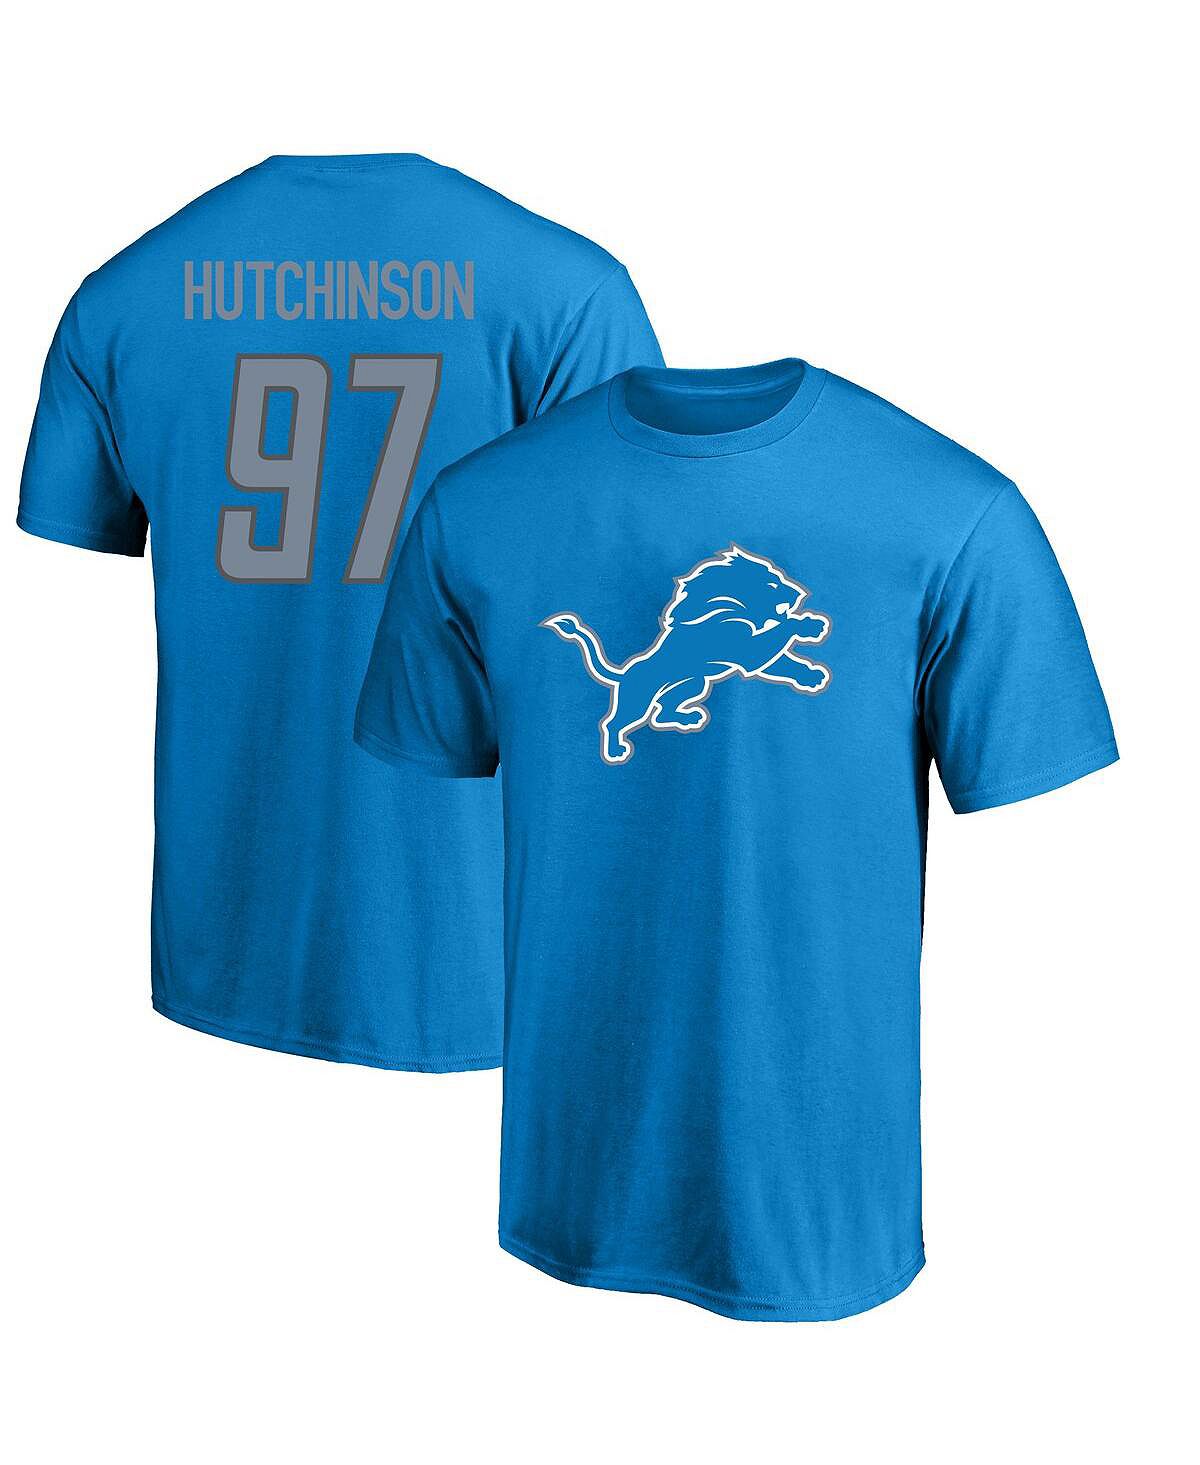 Мужская синяя футболка с логотипом Aidan Hutchinson Detroit Lions Big and Tall, имя и номер игрока Fanatics big sean detroit 2